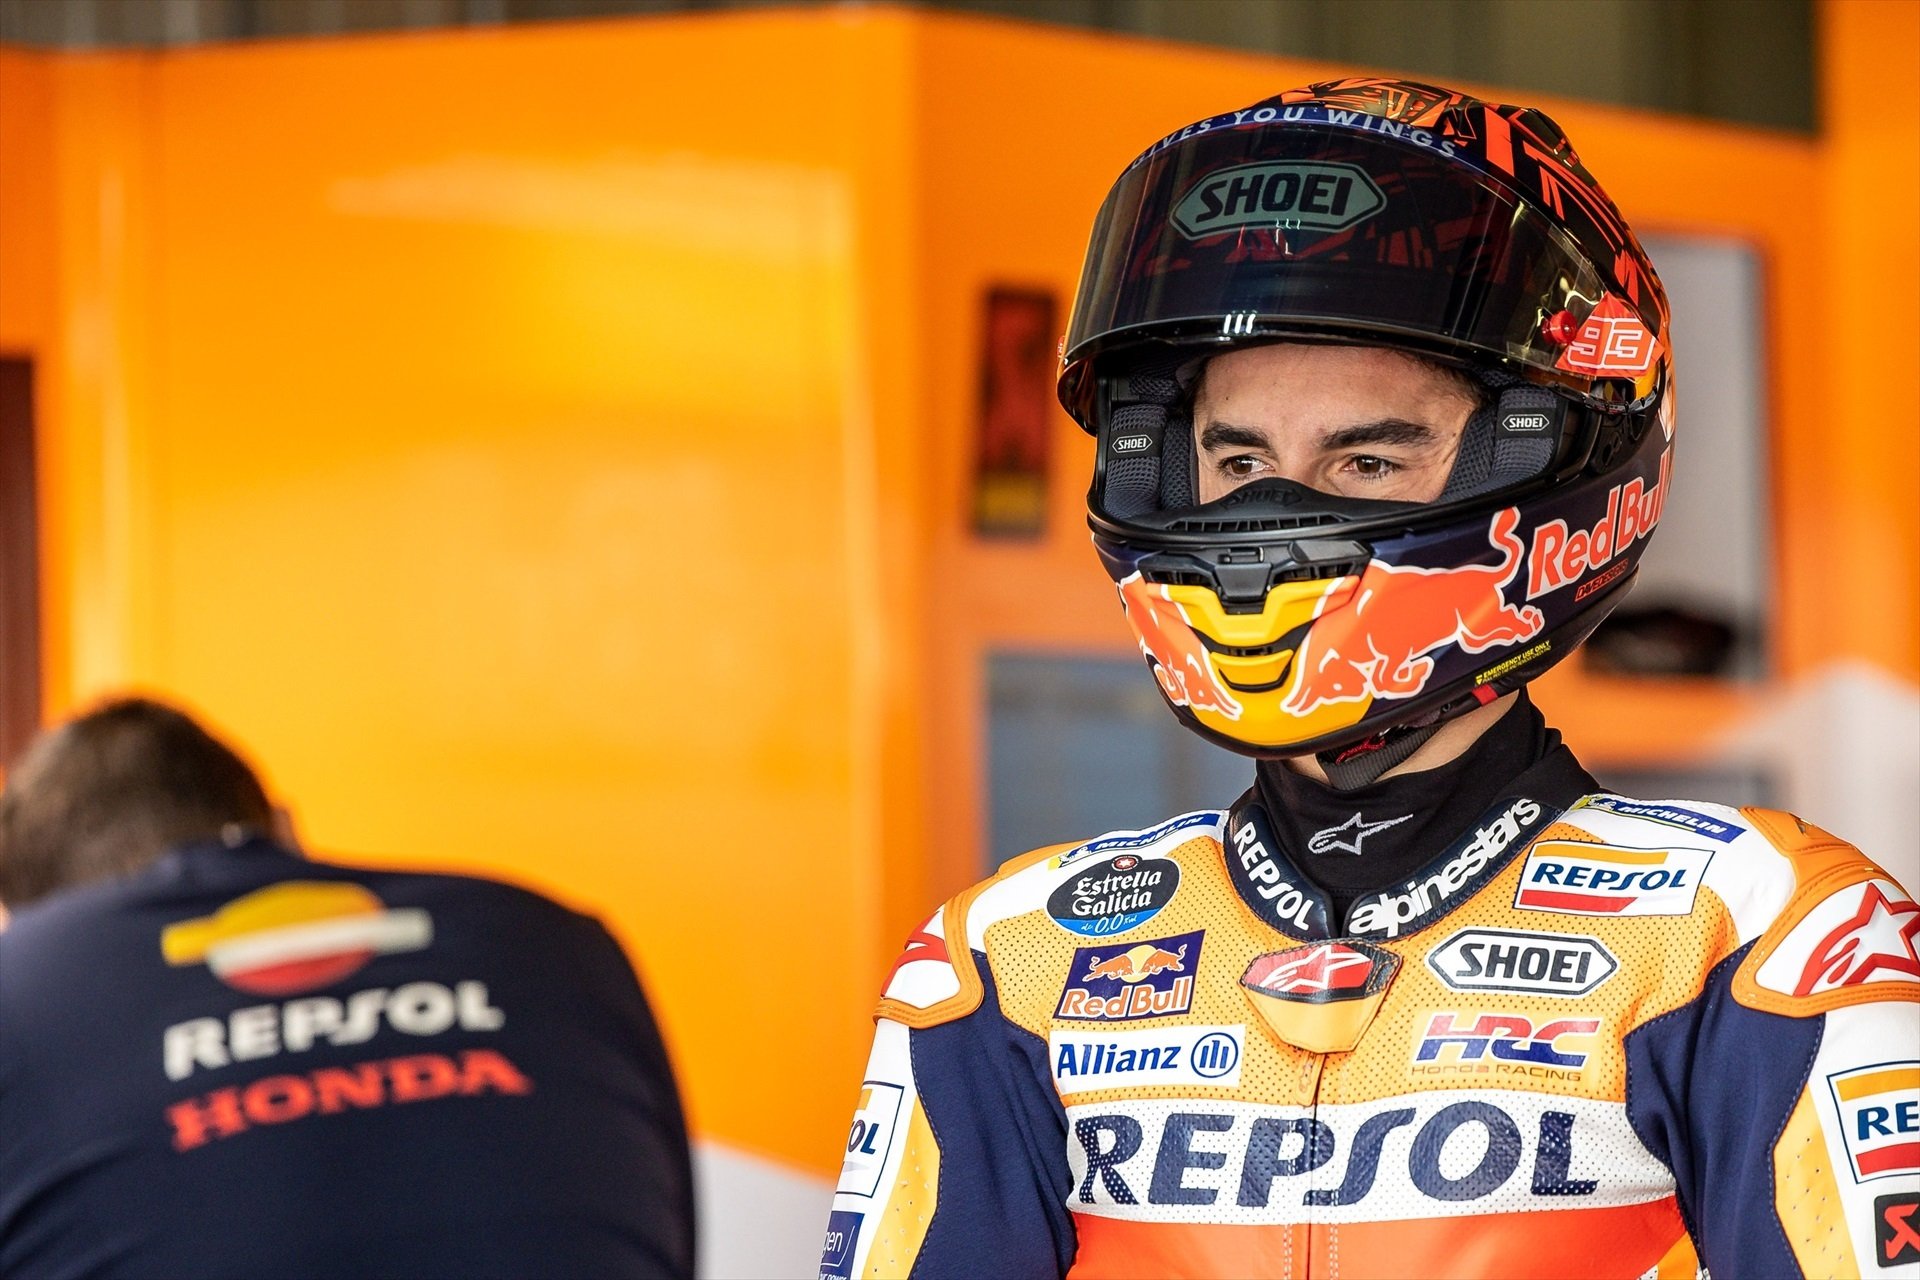 Marc Márquez, de farol i amb ganes de sorprendre: a punt per a un nou inici a MotoGP